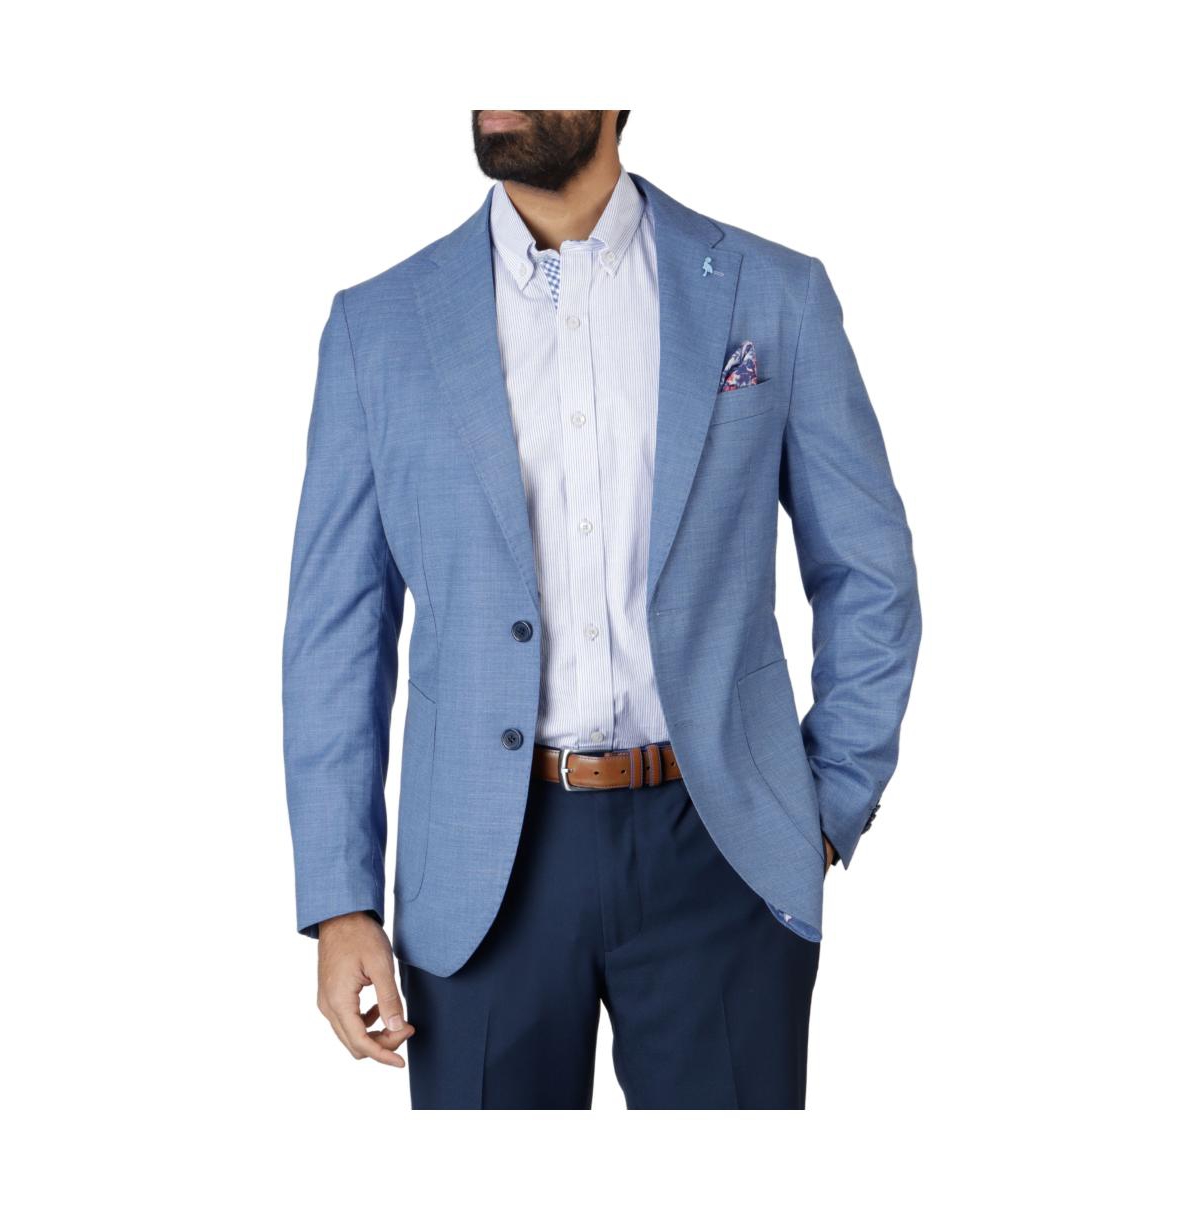 Men's Cross Dyed Solid Sportcoat - Steel blue